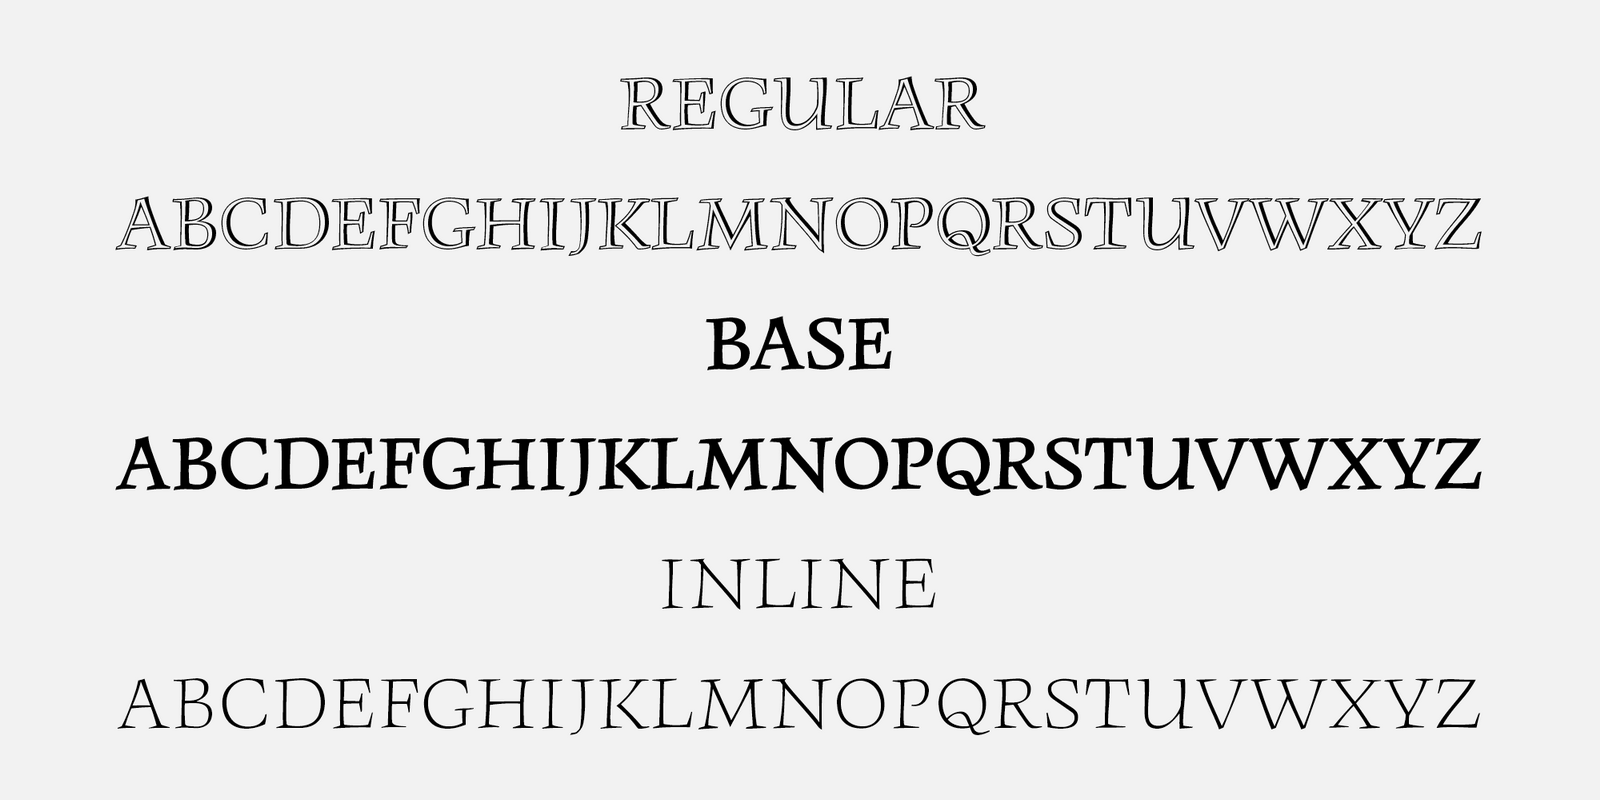 Tři řezy písma Monument – Regular, Base a Inline – se dají vzájemně kombinovat, ale i používat jako samostatné fonty.